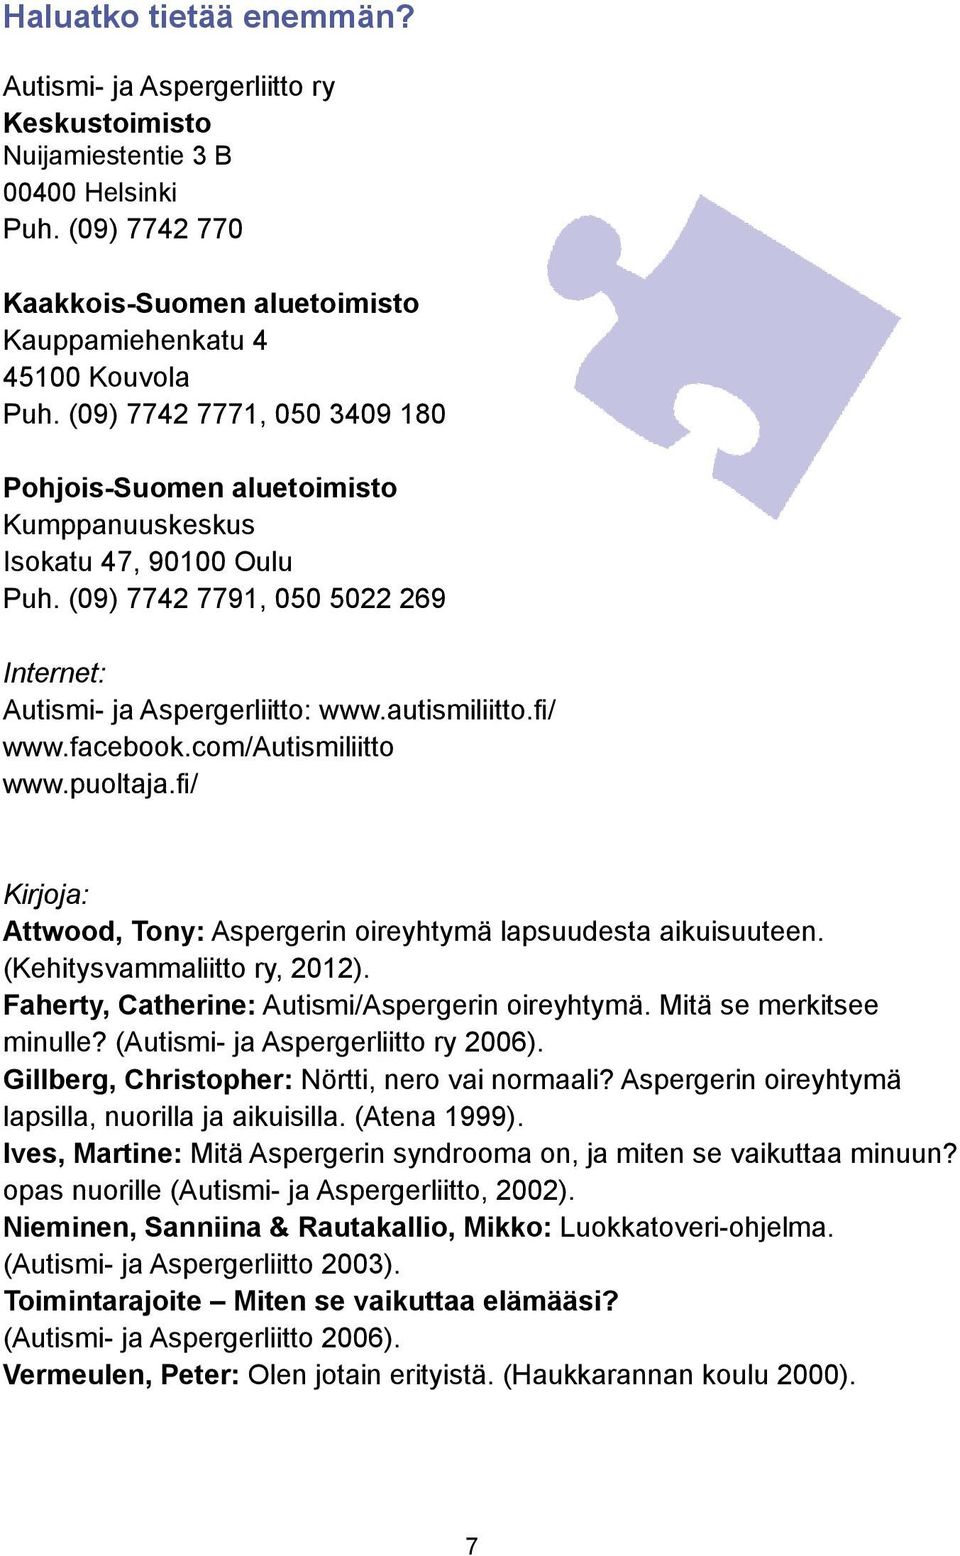 facebook.com/autismiliitto www.puoltaja.fi/ Kirjoja: Attwood, Tony: Aspergerin oireyhtymä lapsuudesta aikuisuuteen. (Kehitysvammaliitto ry, 2012). Faherty, Catherine: Autismi/Aspergerin oireyhtymä.